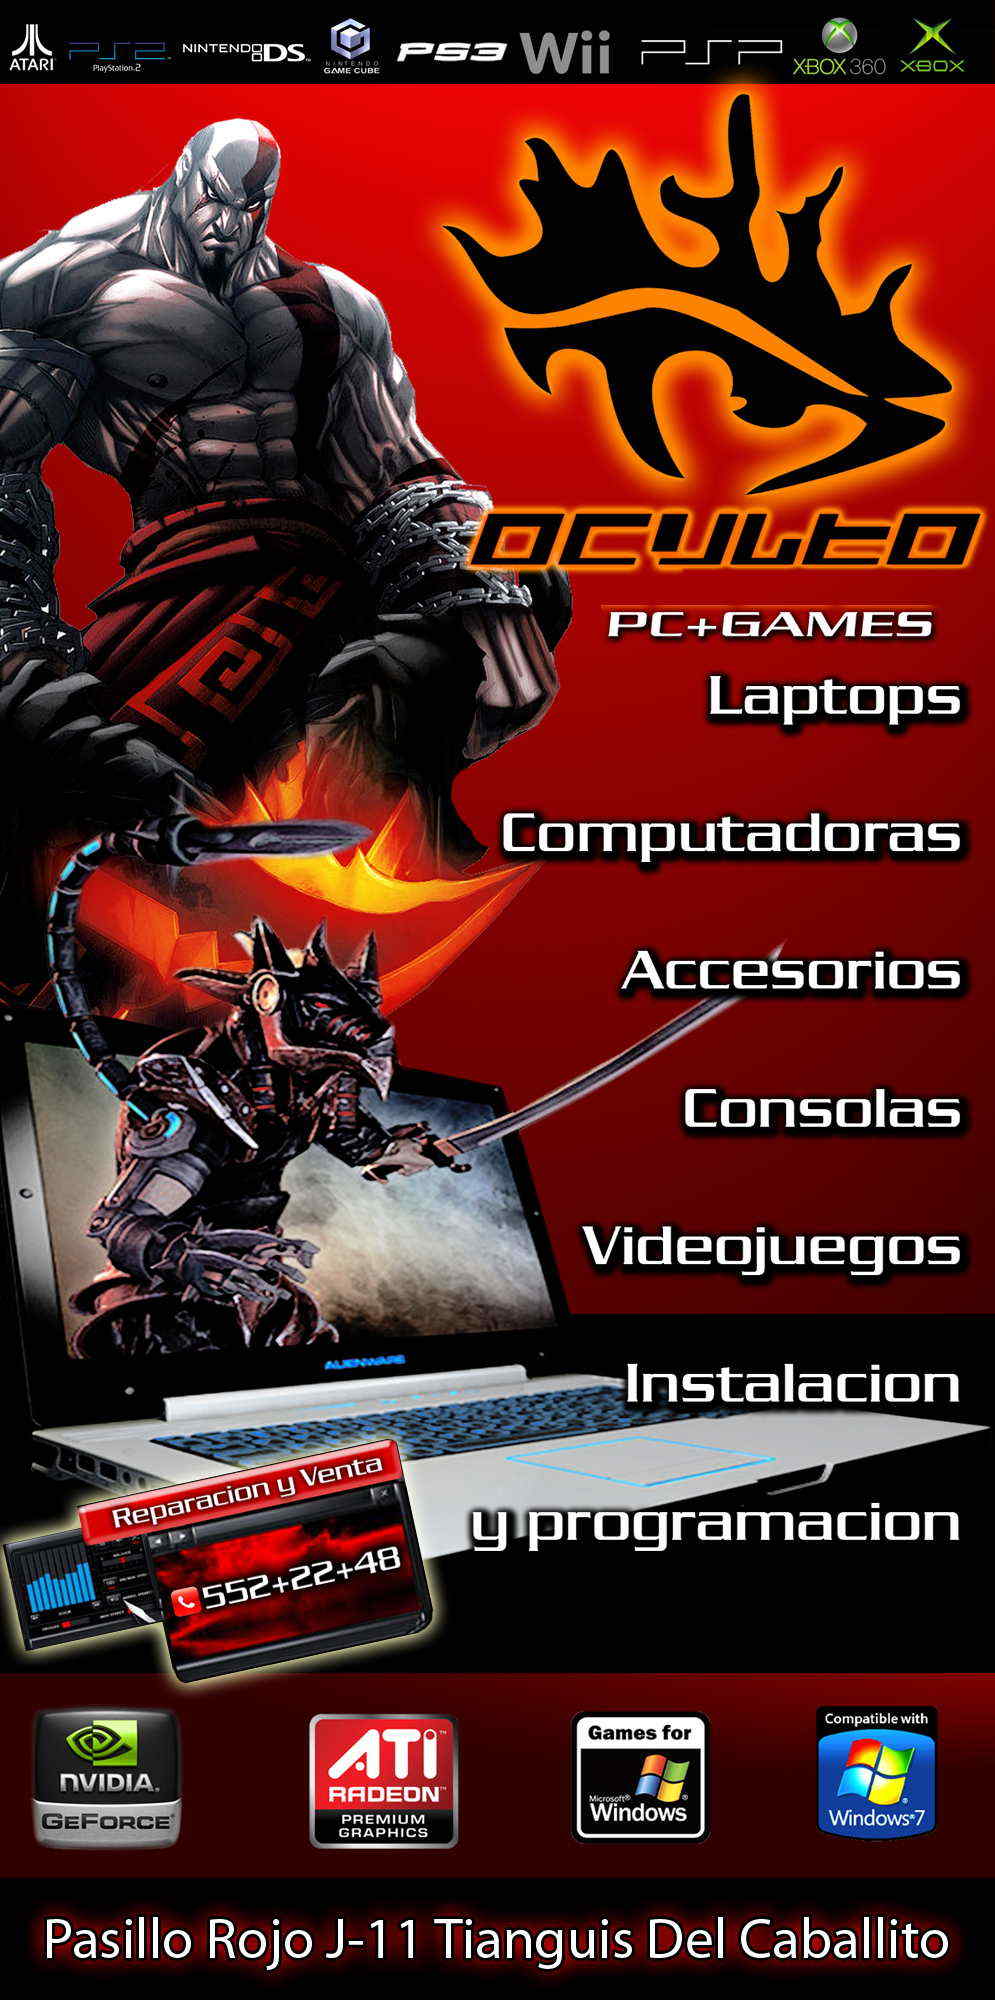 OCULTO PC-GAMES-LAPTOPS, COMPUTADORAS, ACCESORIOS, CONSOLAS, VIDEOJUEGOS, INSTALACION Y PROGRAMACION.